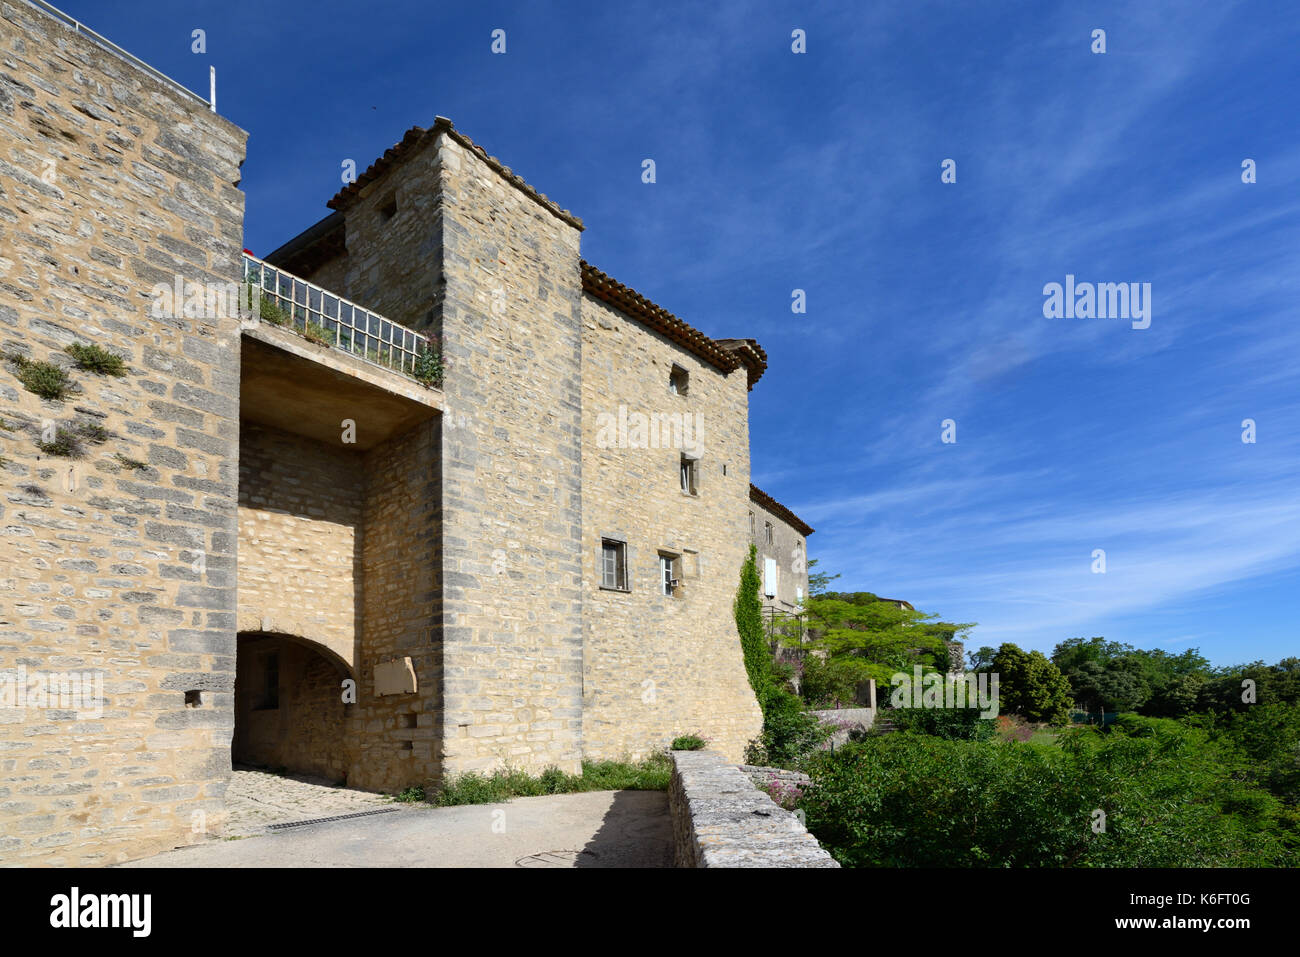 Porte de la ville et entrée du village médiéval fortifié de Viens Luberon Parc régional Vaucluse Provence France Banque D'Images